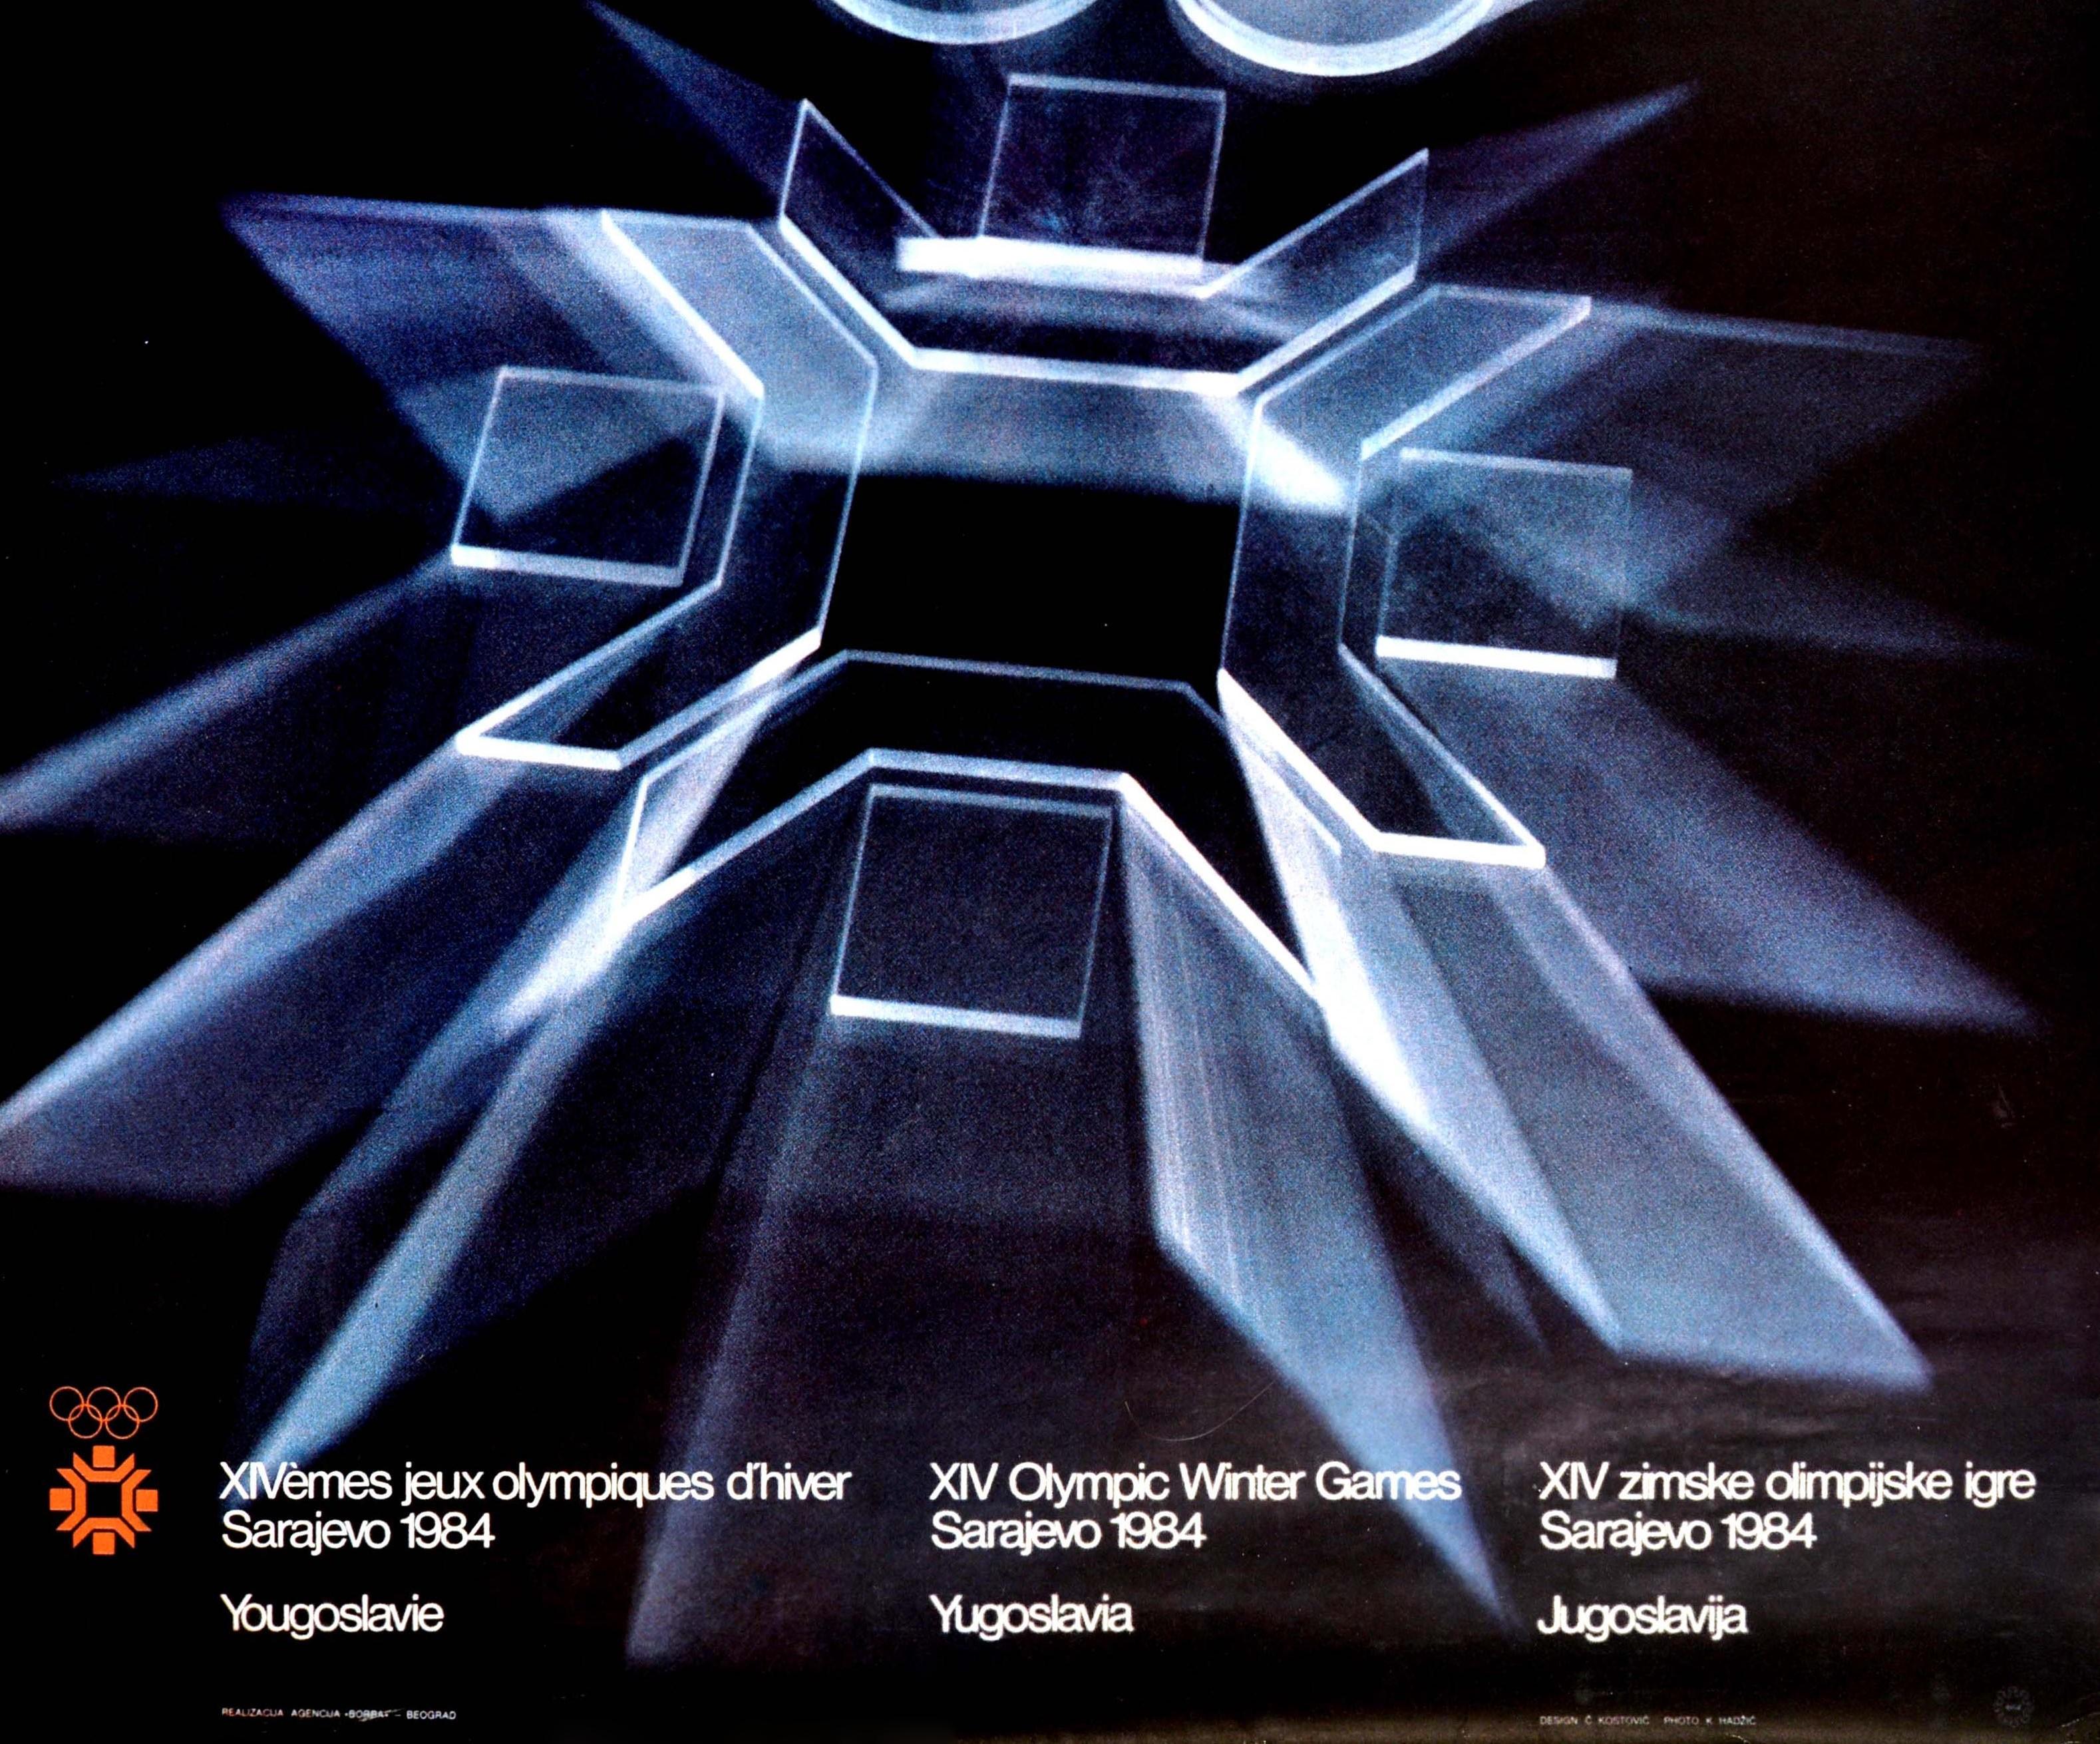 sarajevo olympics poster